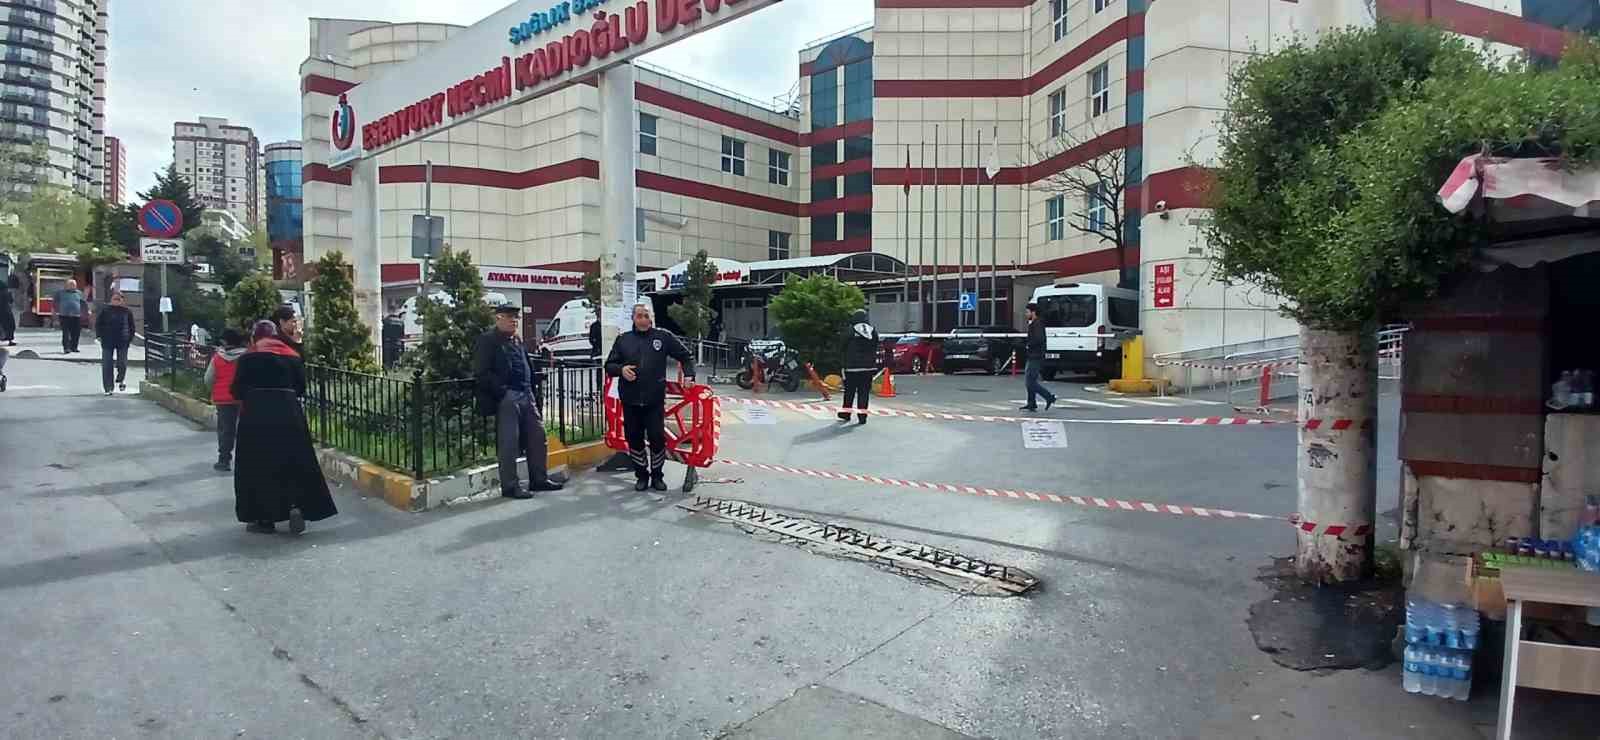 Esenyurt Necmi Kadıoğlu Devlet Hastanesi elektrik arızası nedeniyle kapandı
